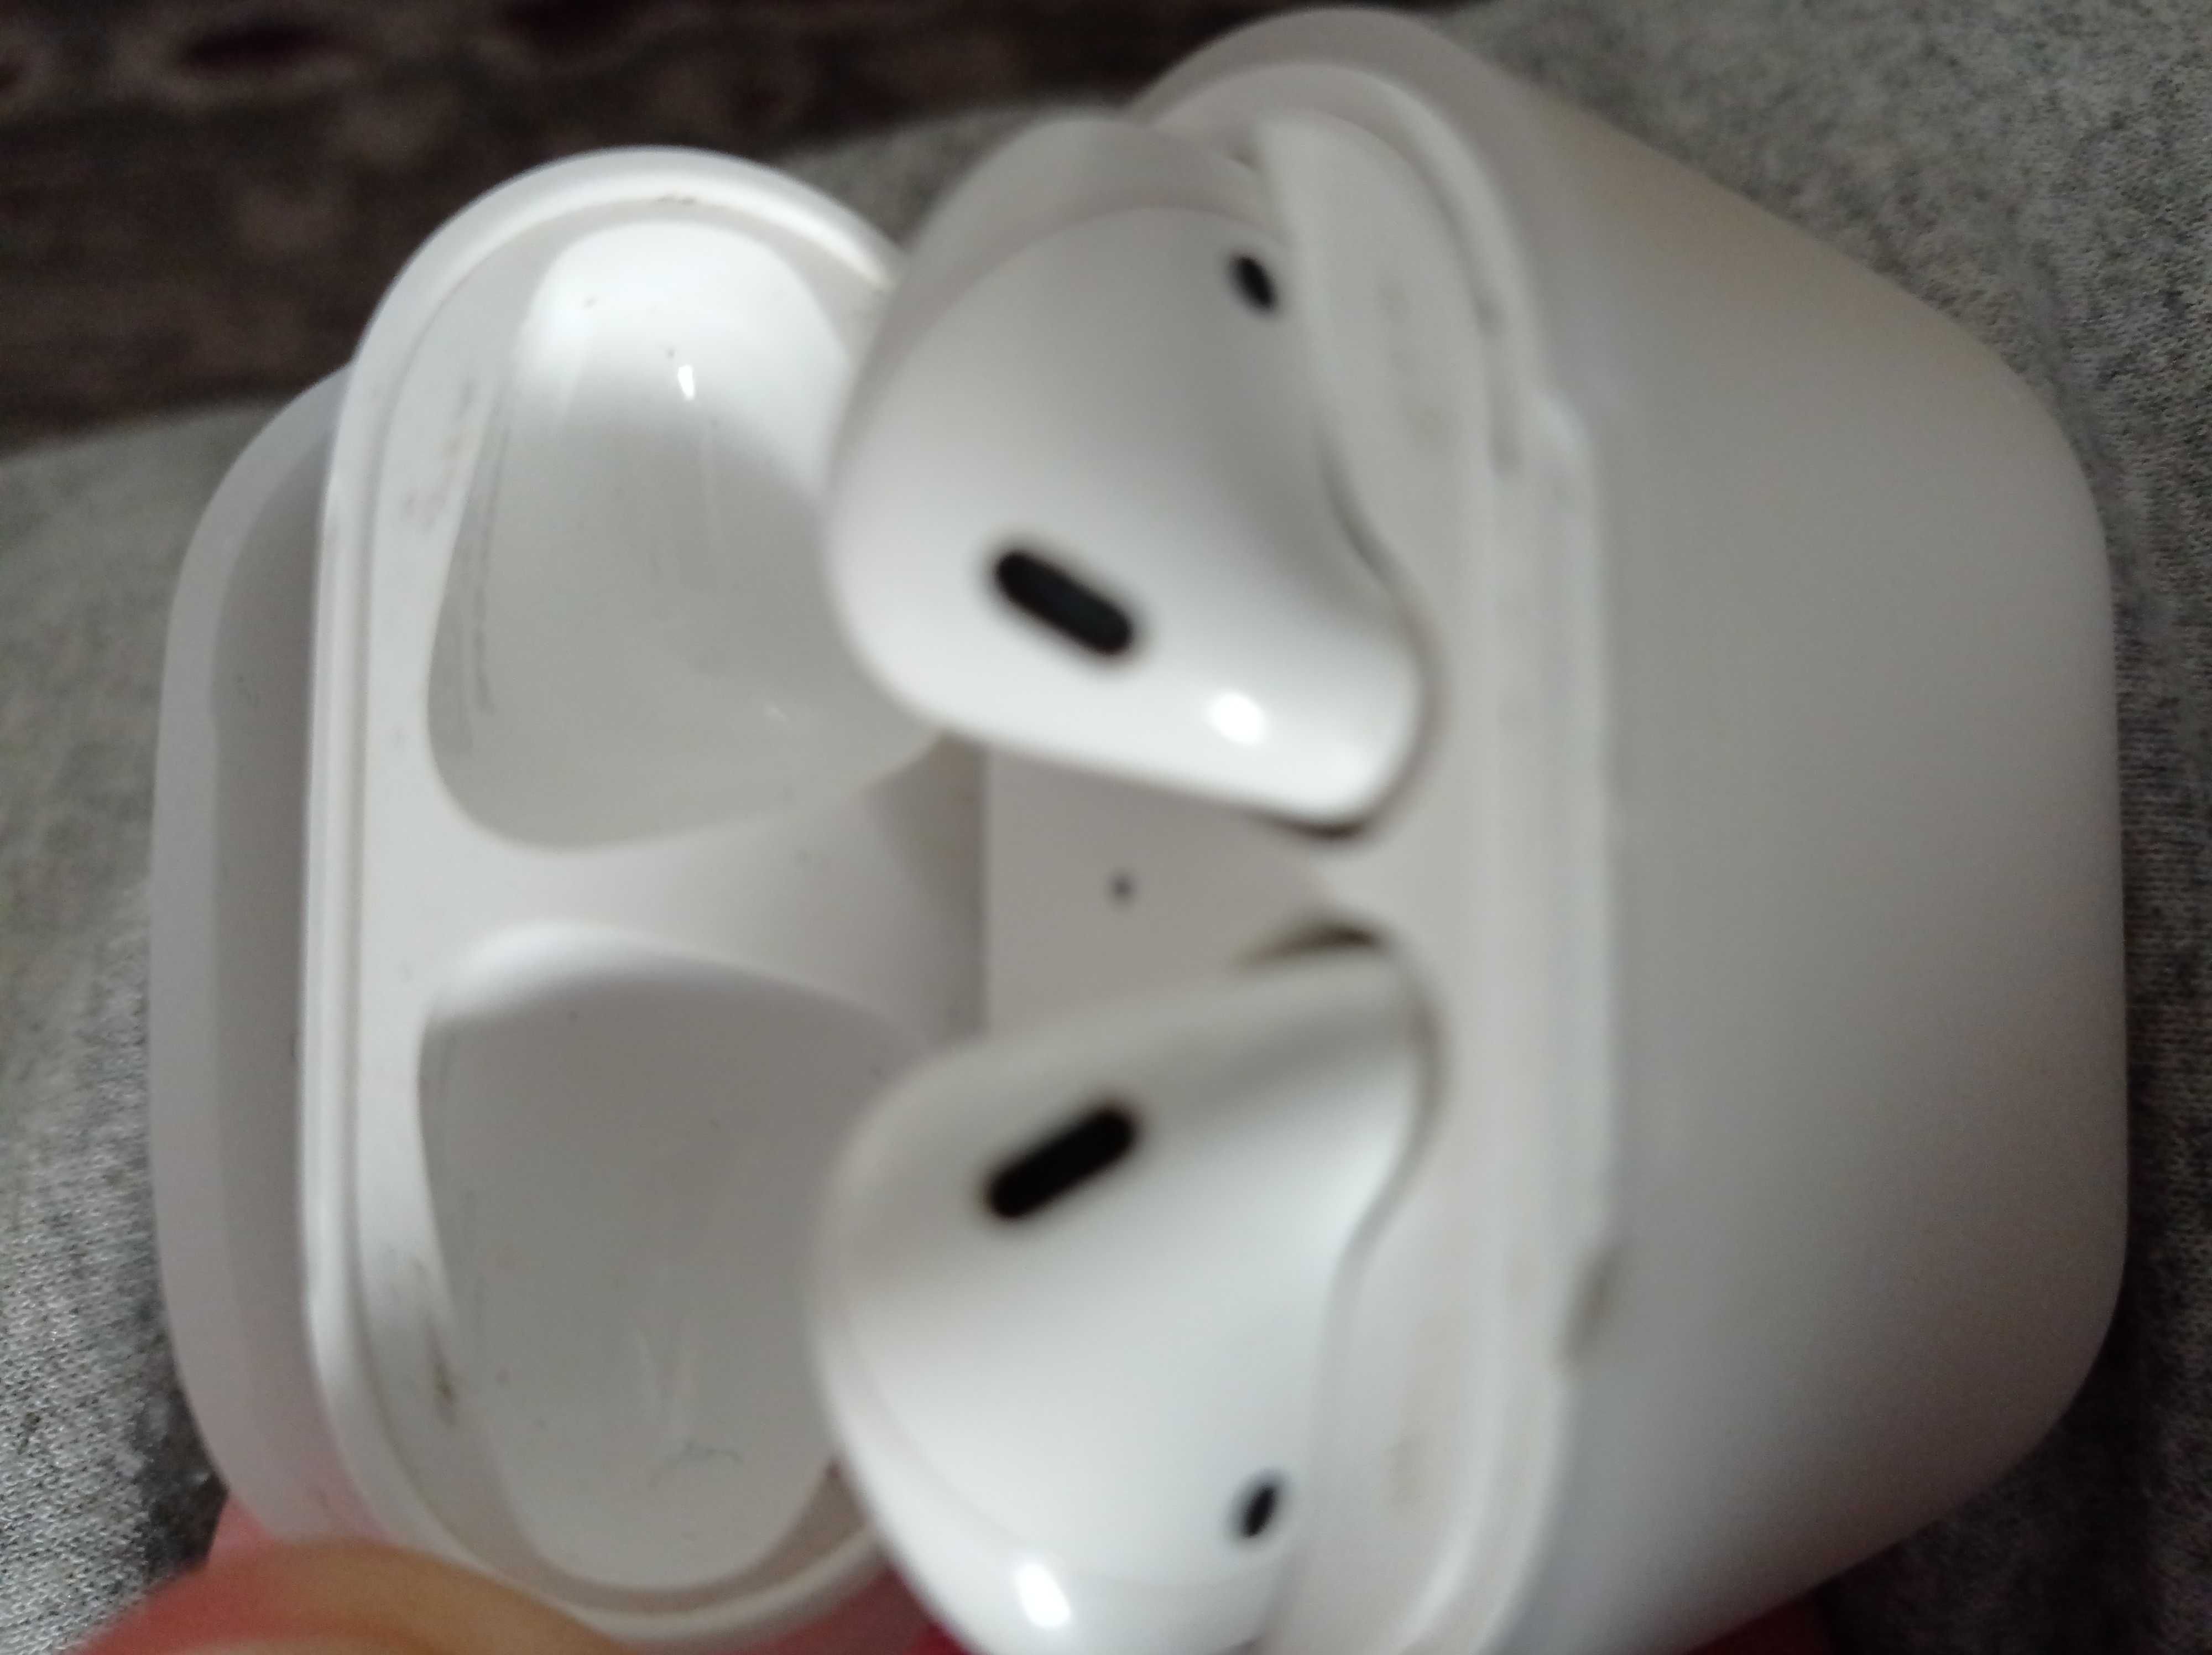 Продам  Apple iPhone навушники білого кольору